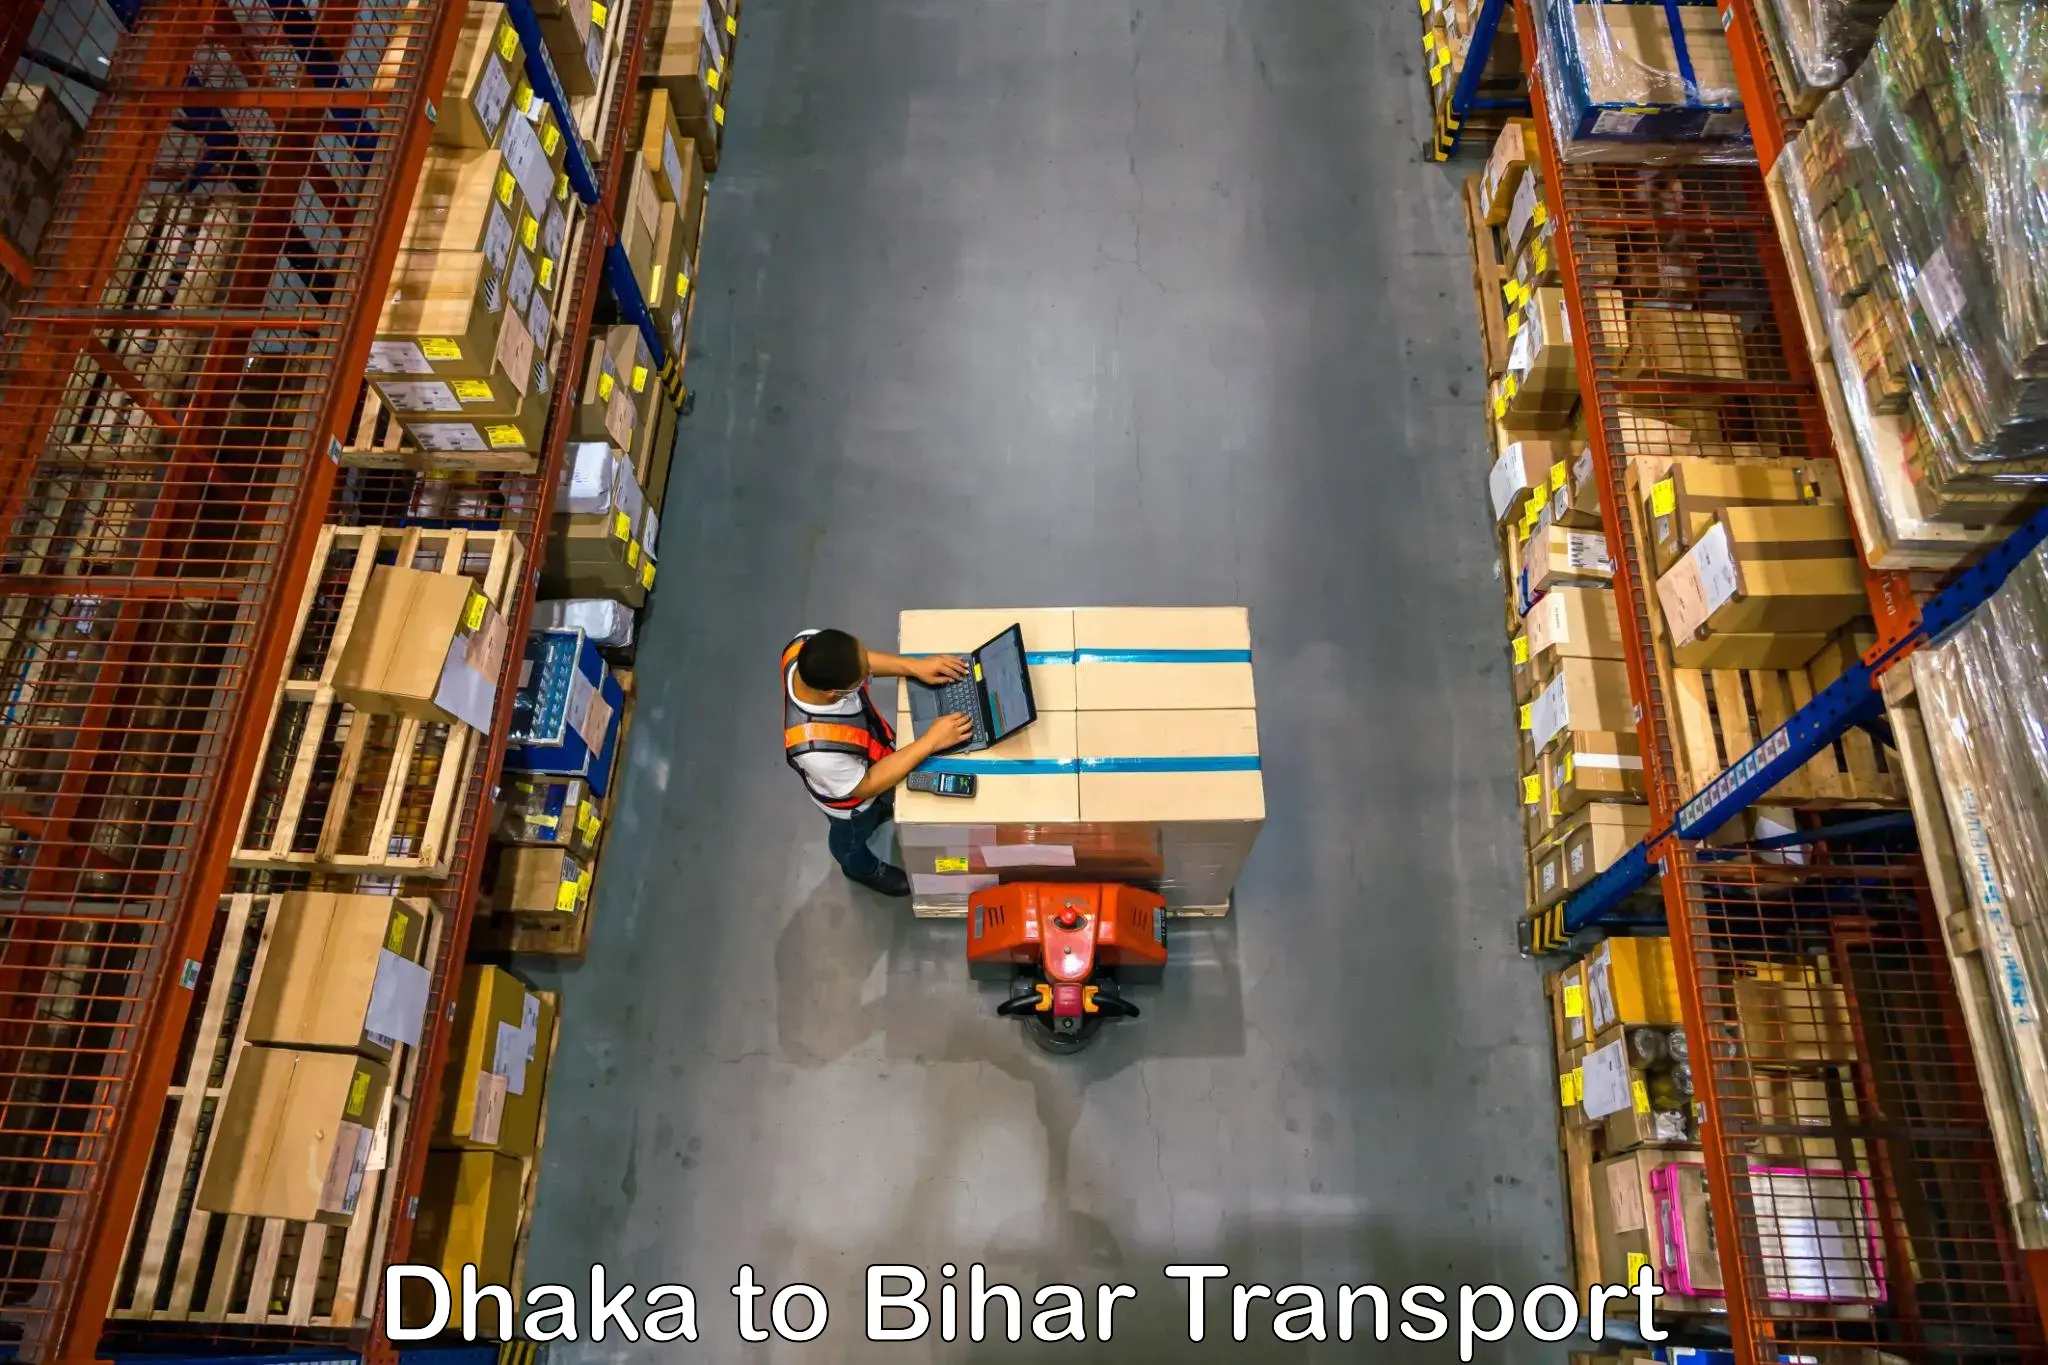 Furniture transport service Dhaka to Jevargi